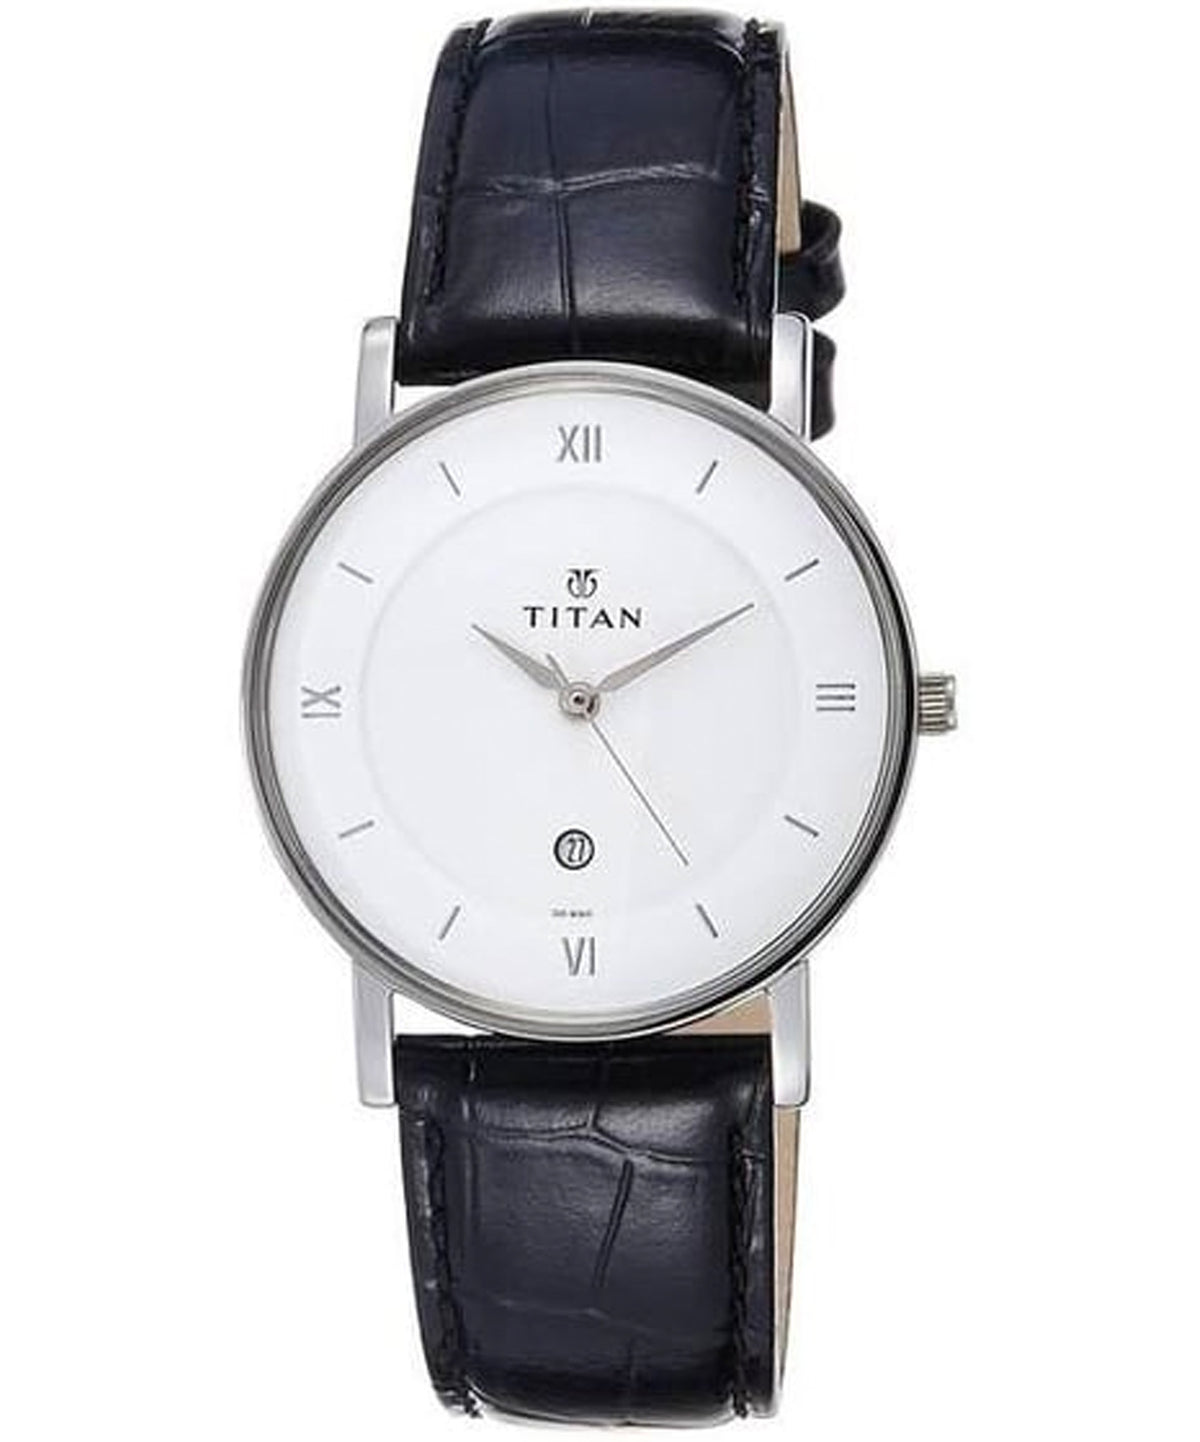 Titan Men's Watch White Dial Black Leather Strap Watch,9162SL04